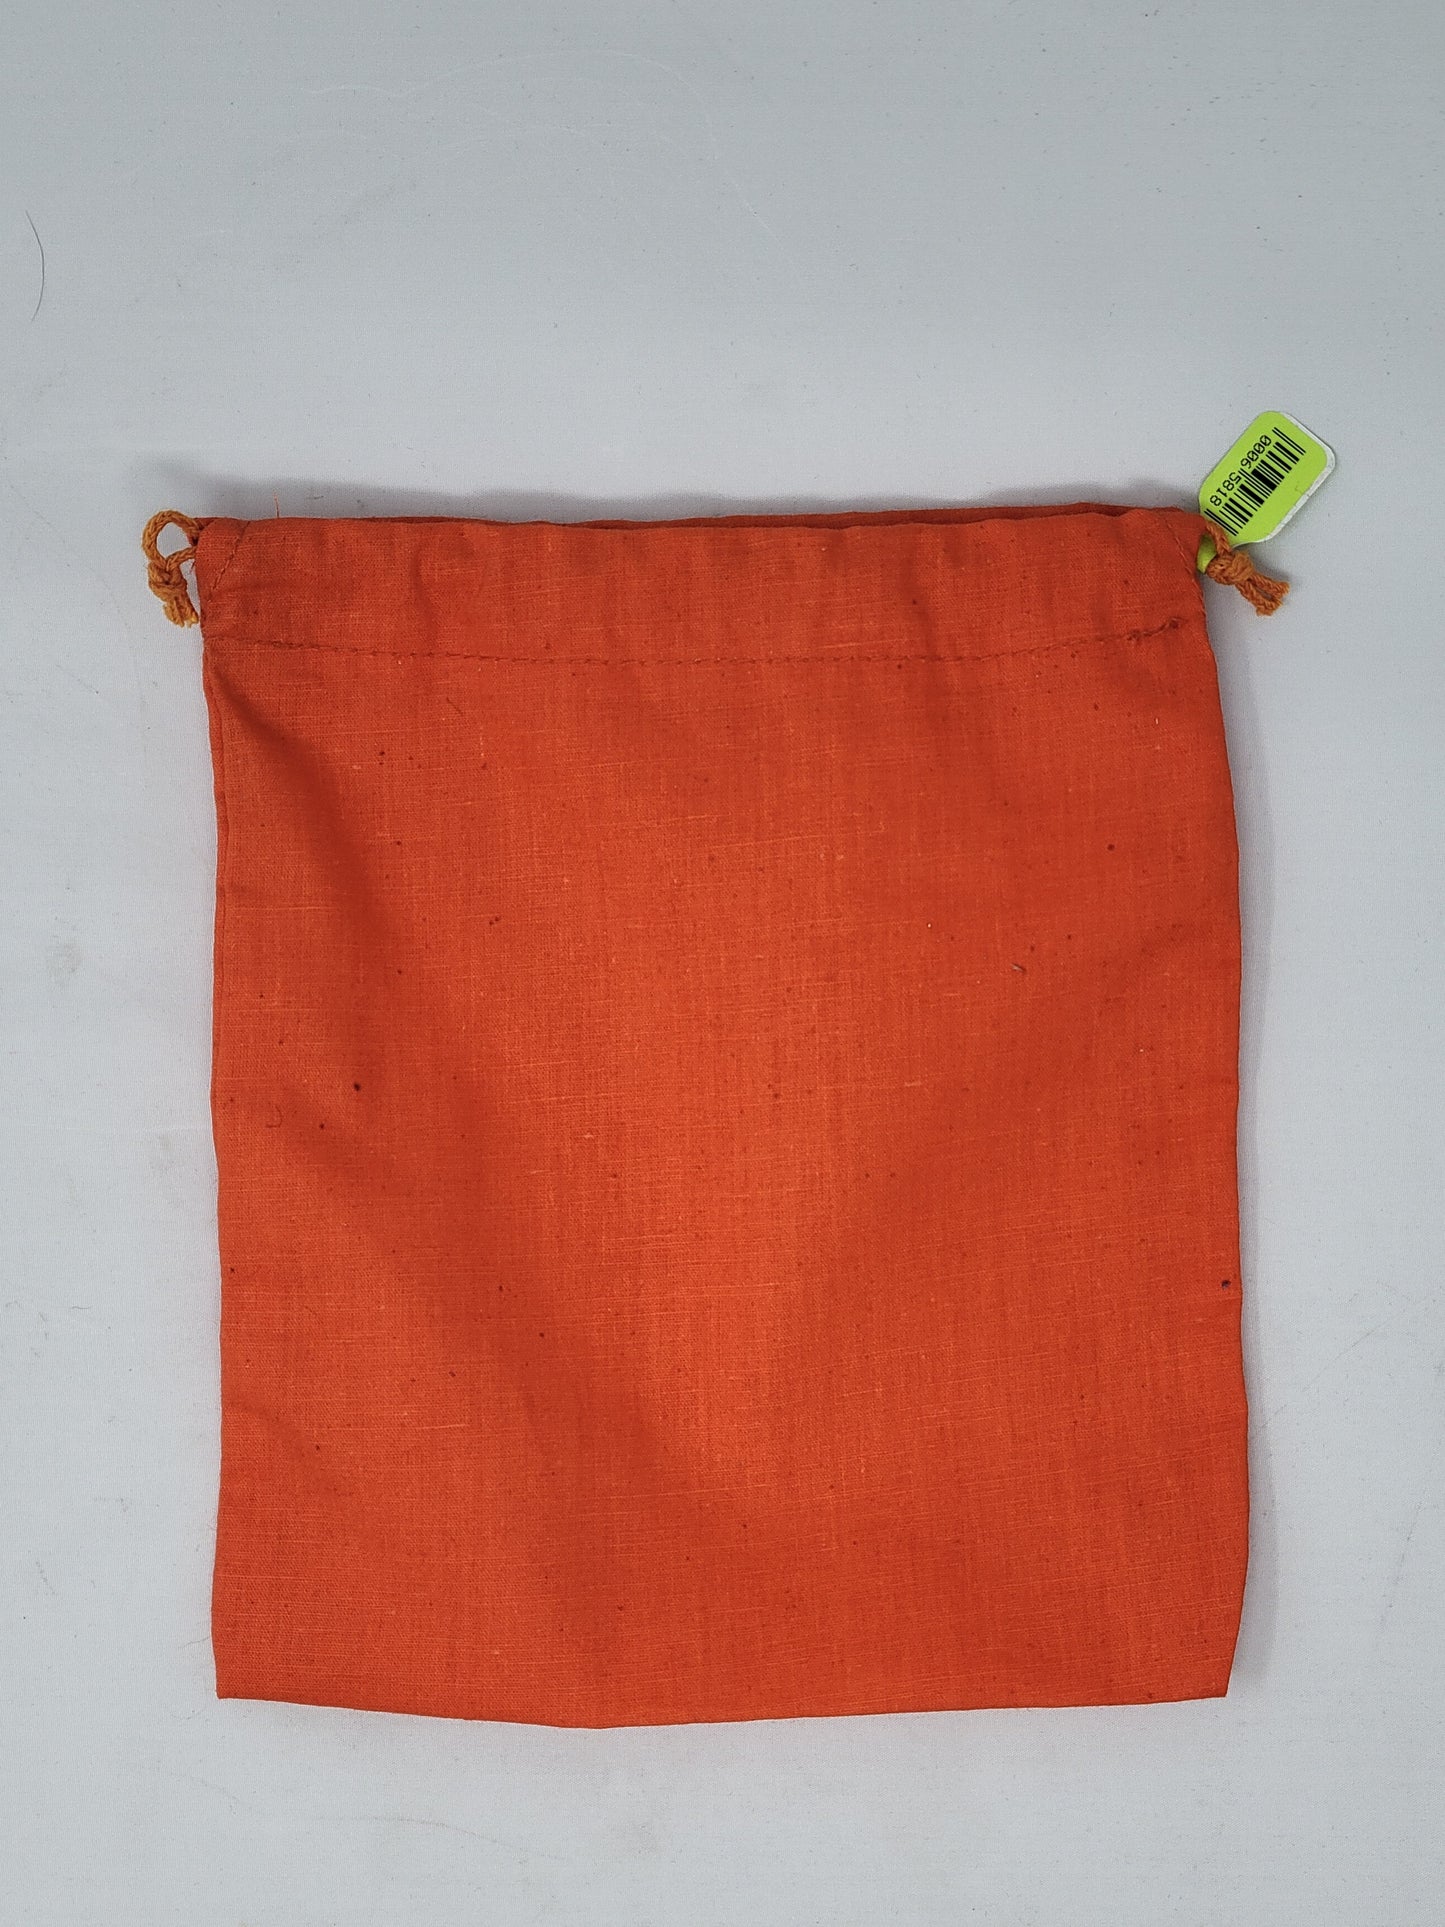 Cotton Bags 7 x 6 w/Drawstring